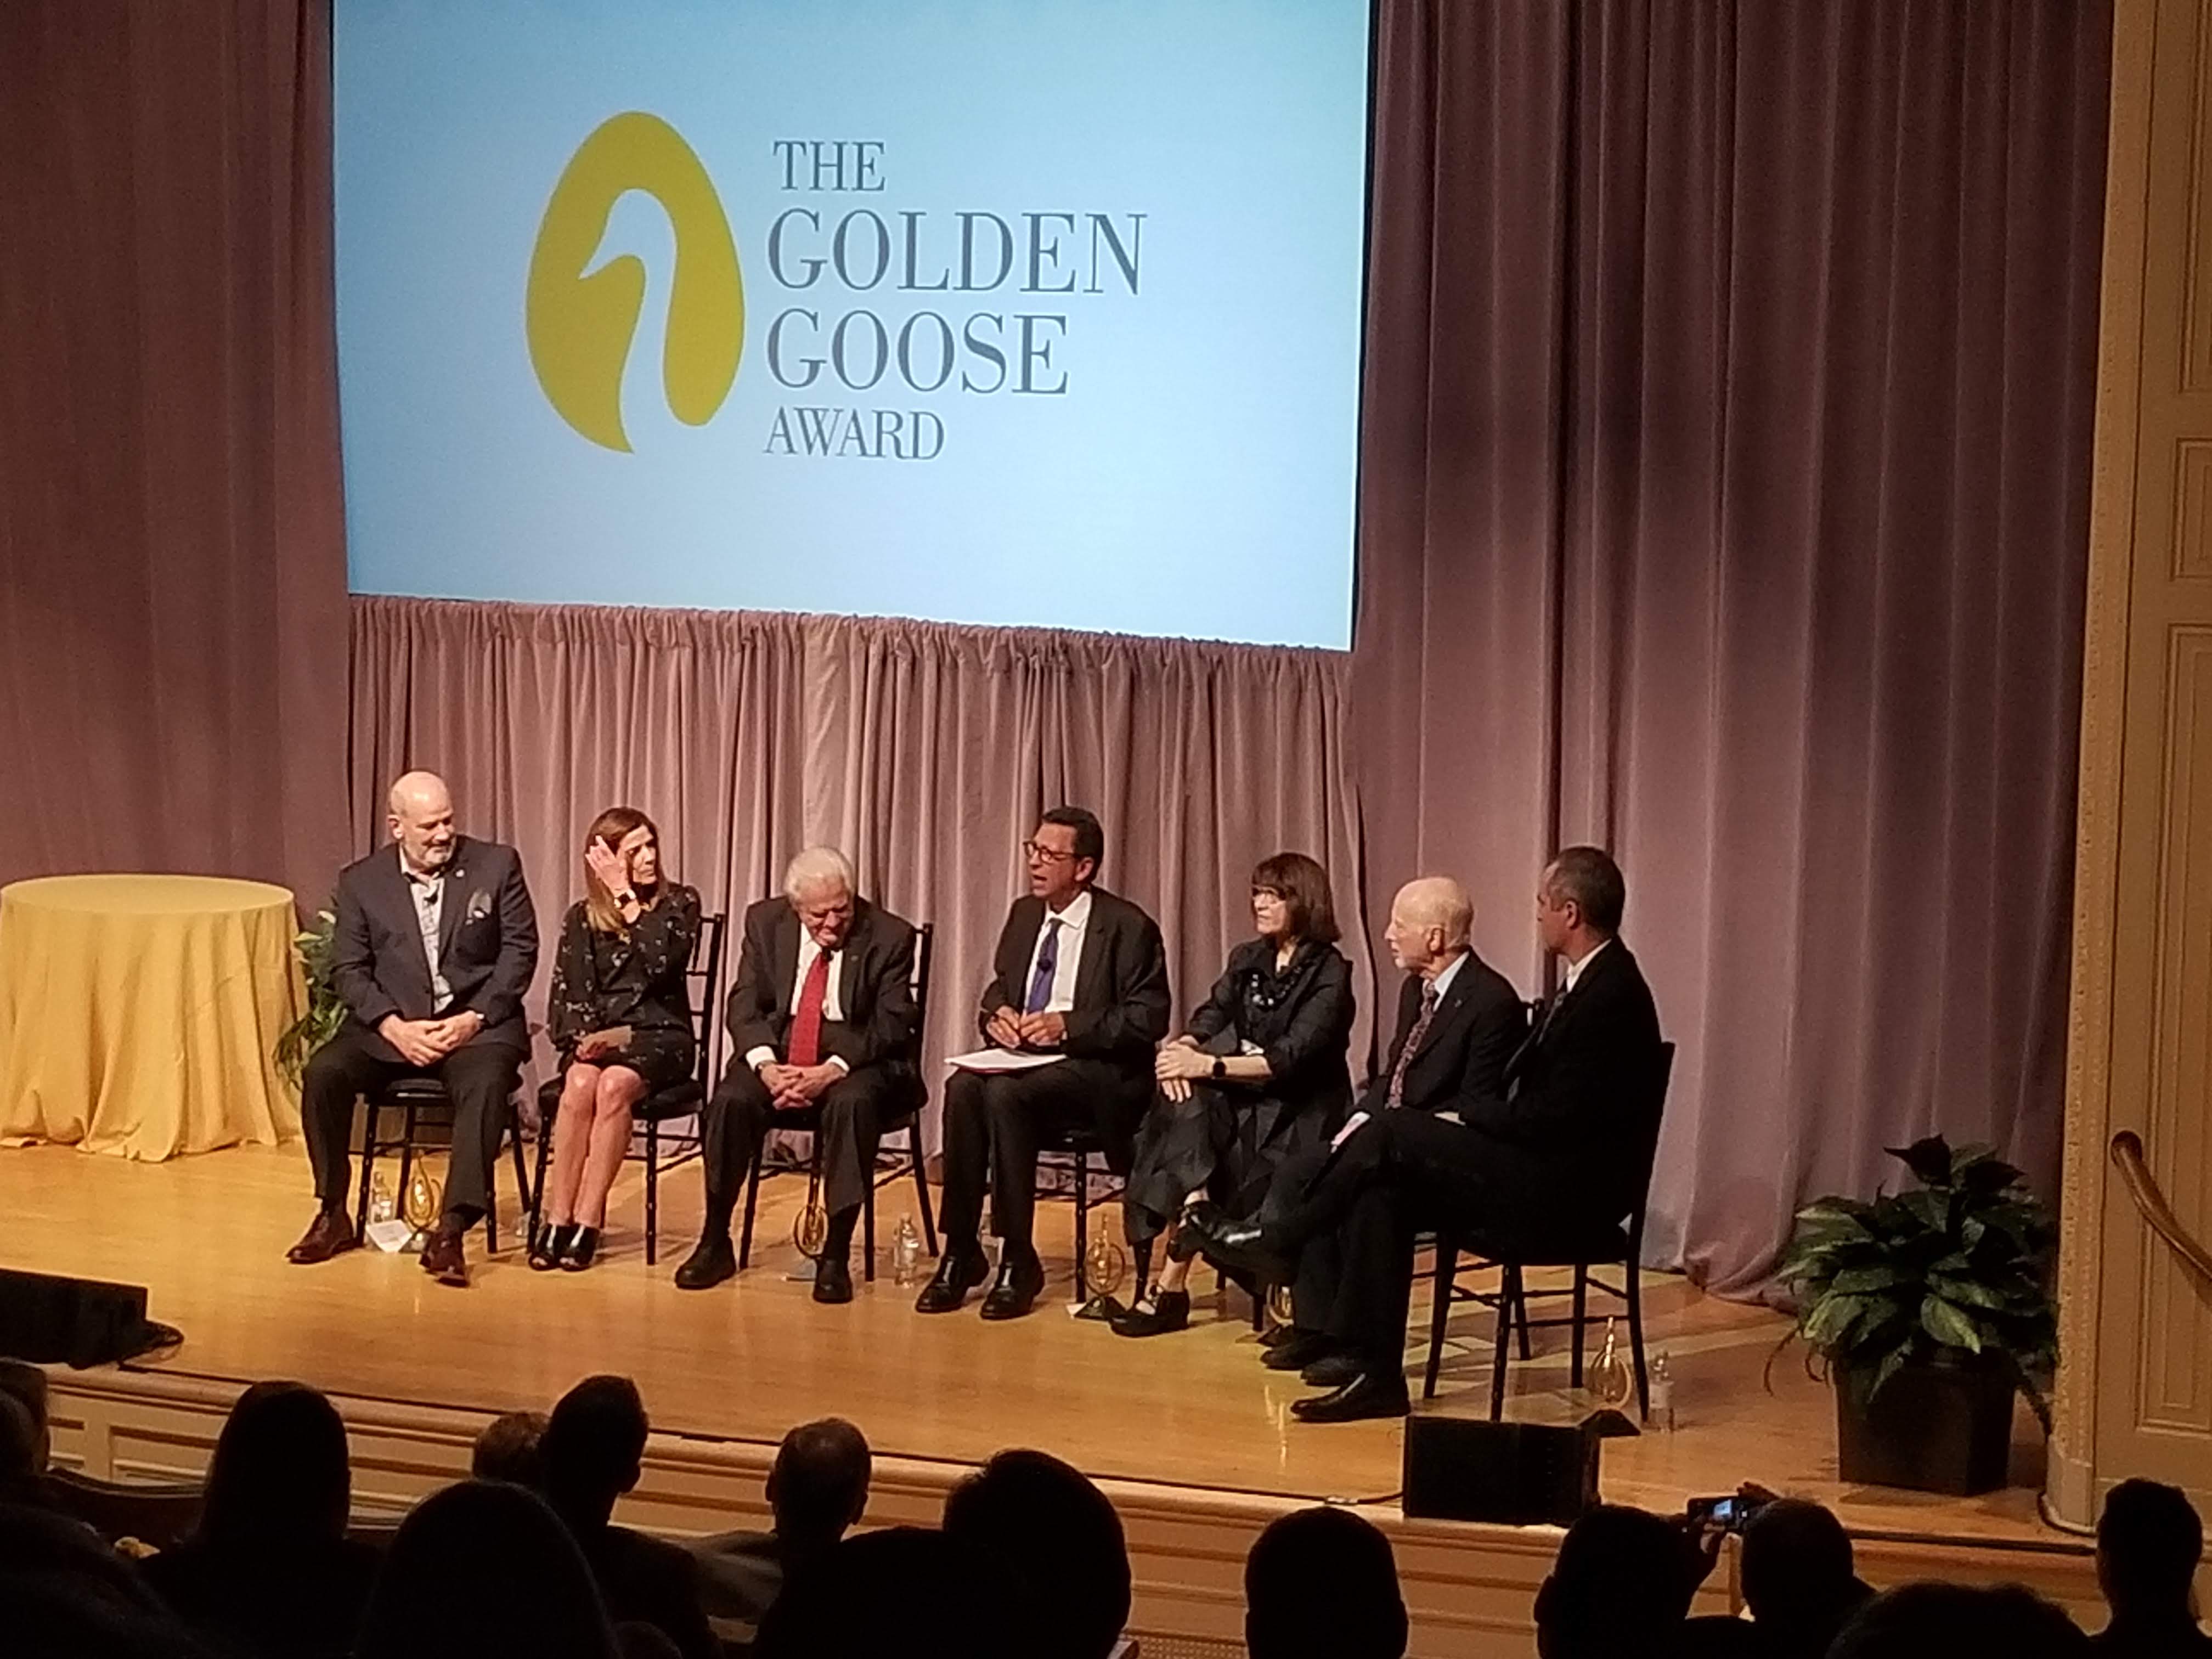 anklageren En god ven opfindelse BPS Members Rally for Medical Research; Attend Golden Goose Award